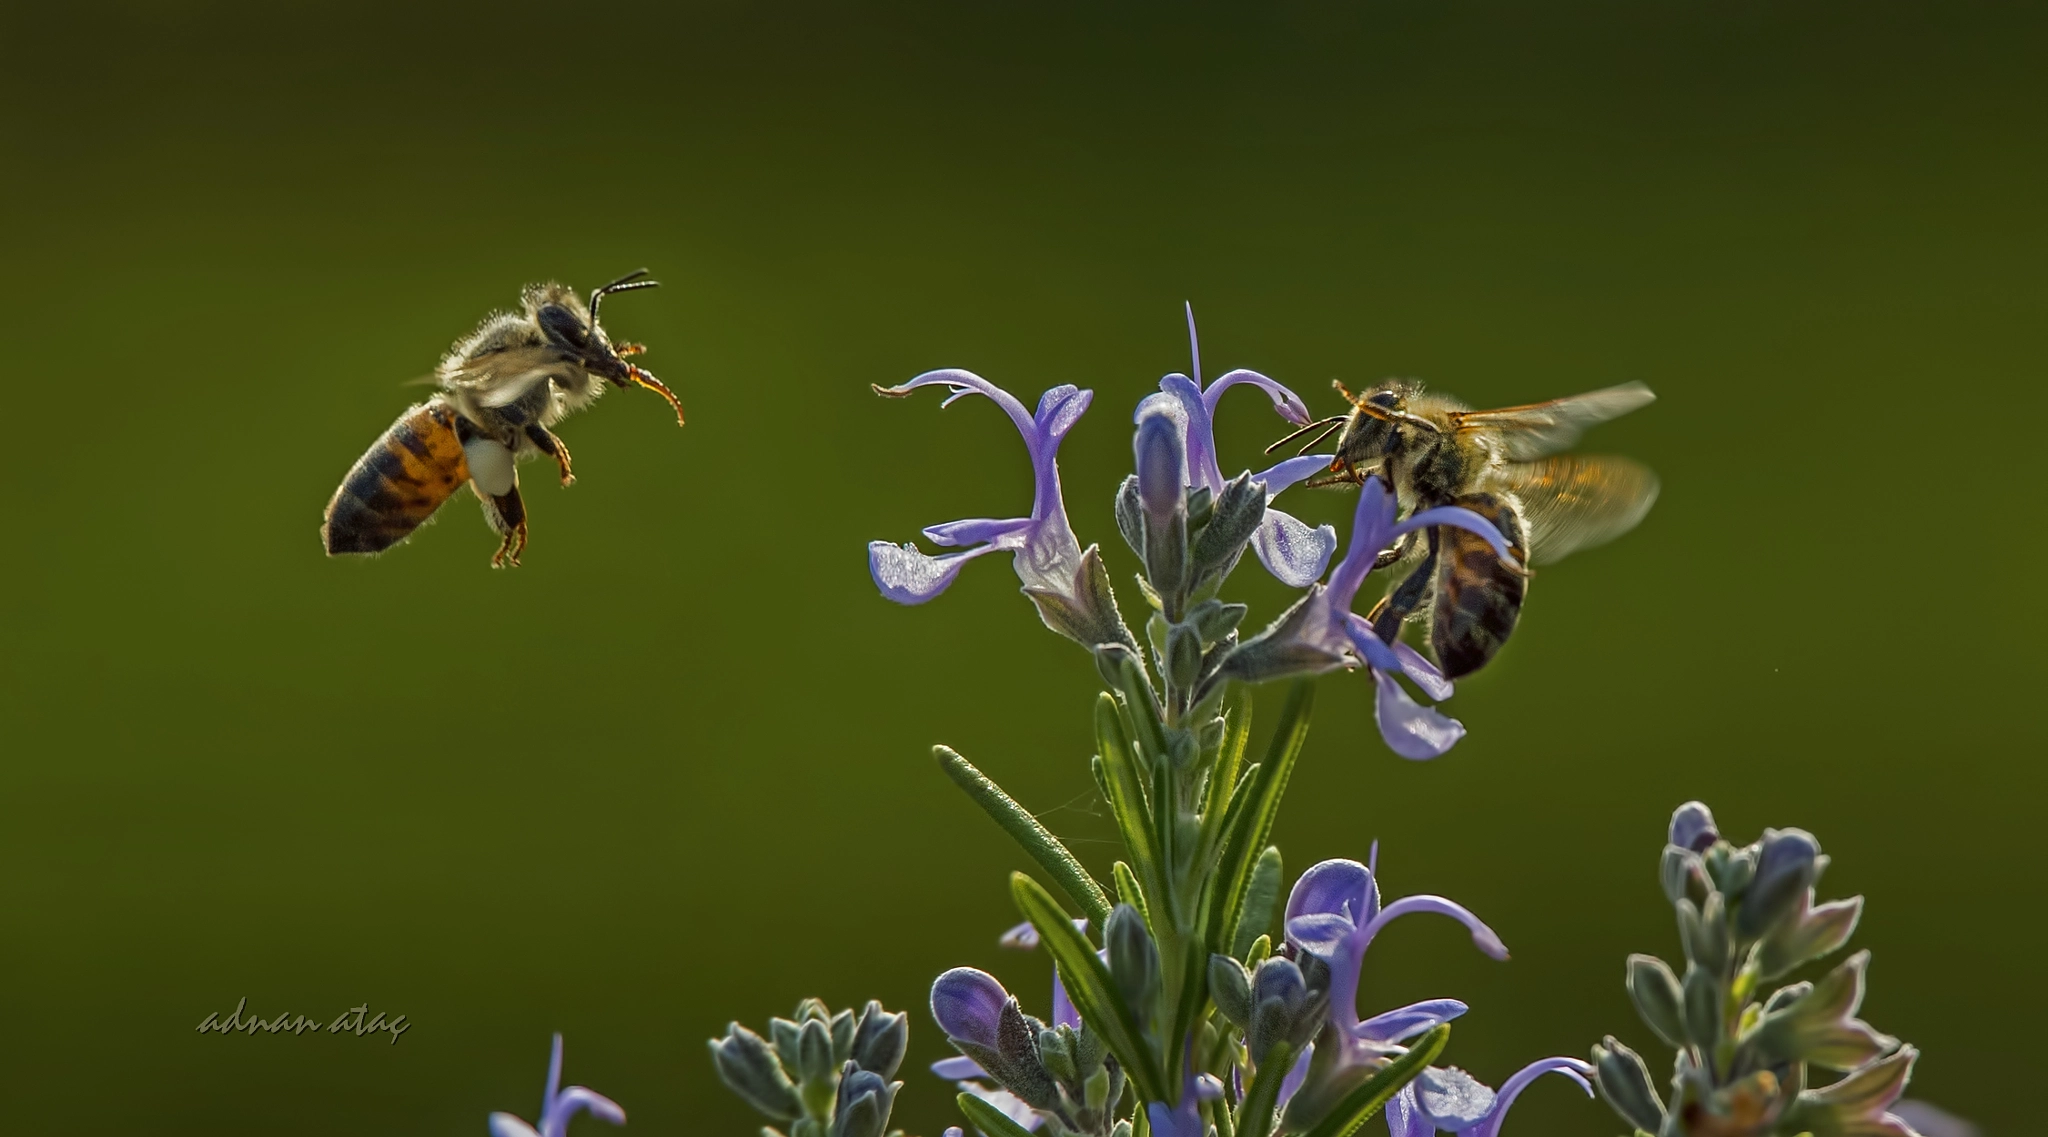 Sigma 50-500mm F4.5-6.3 DG OS HSM sample photo. Bal arısı (apis mellifica) ve biberiye çiçeği (rosmarinus officinalis) photography